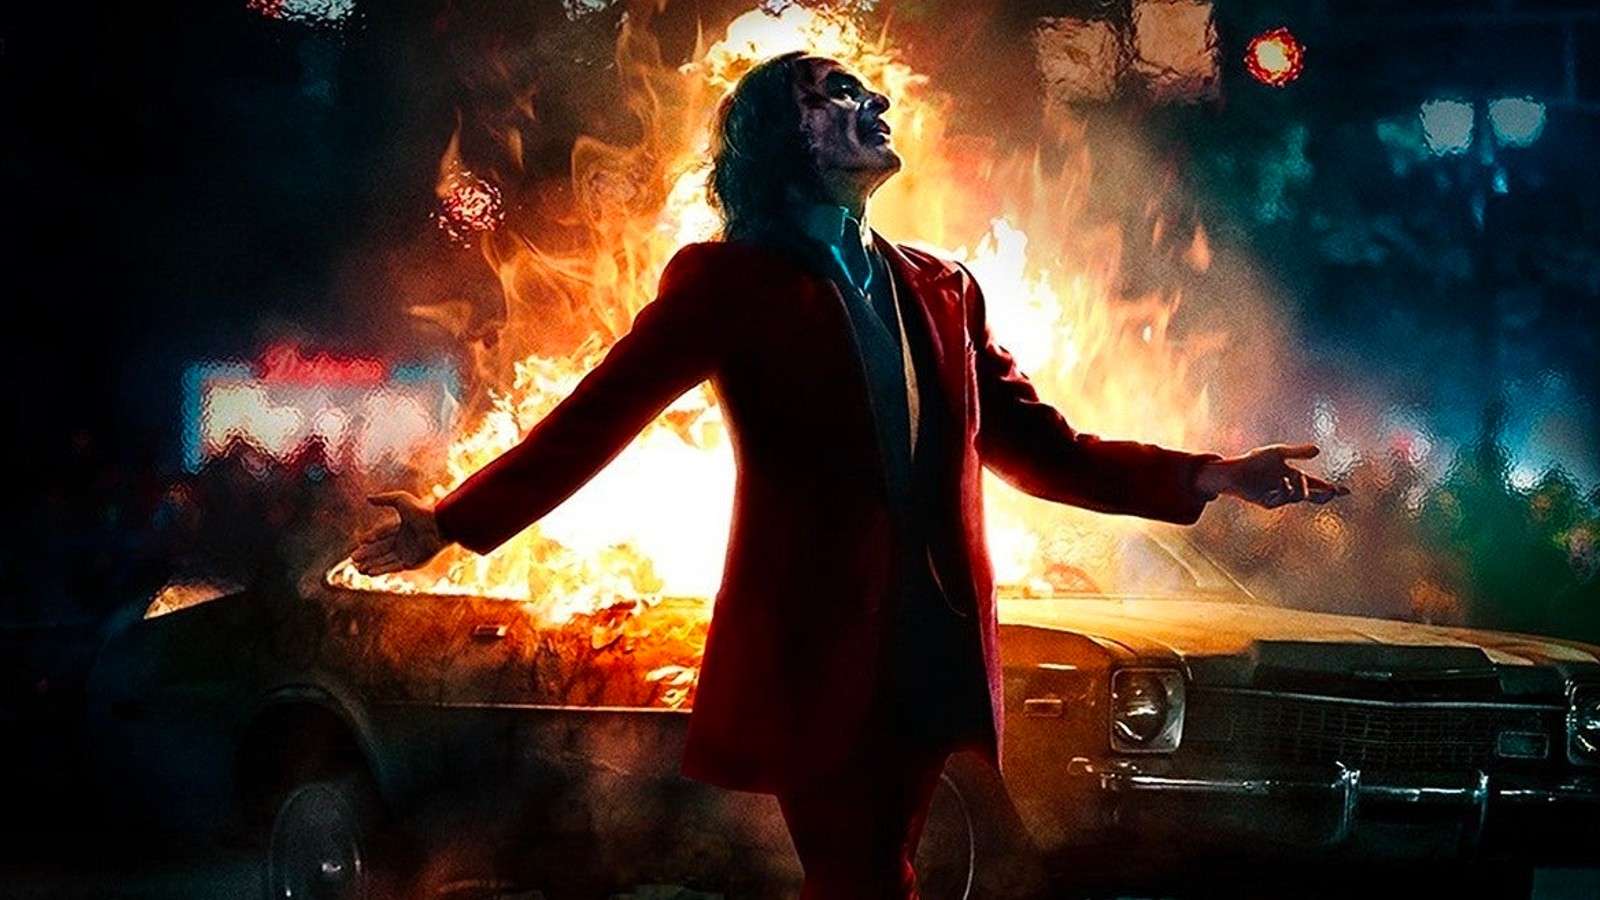 The poster for Joker